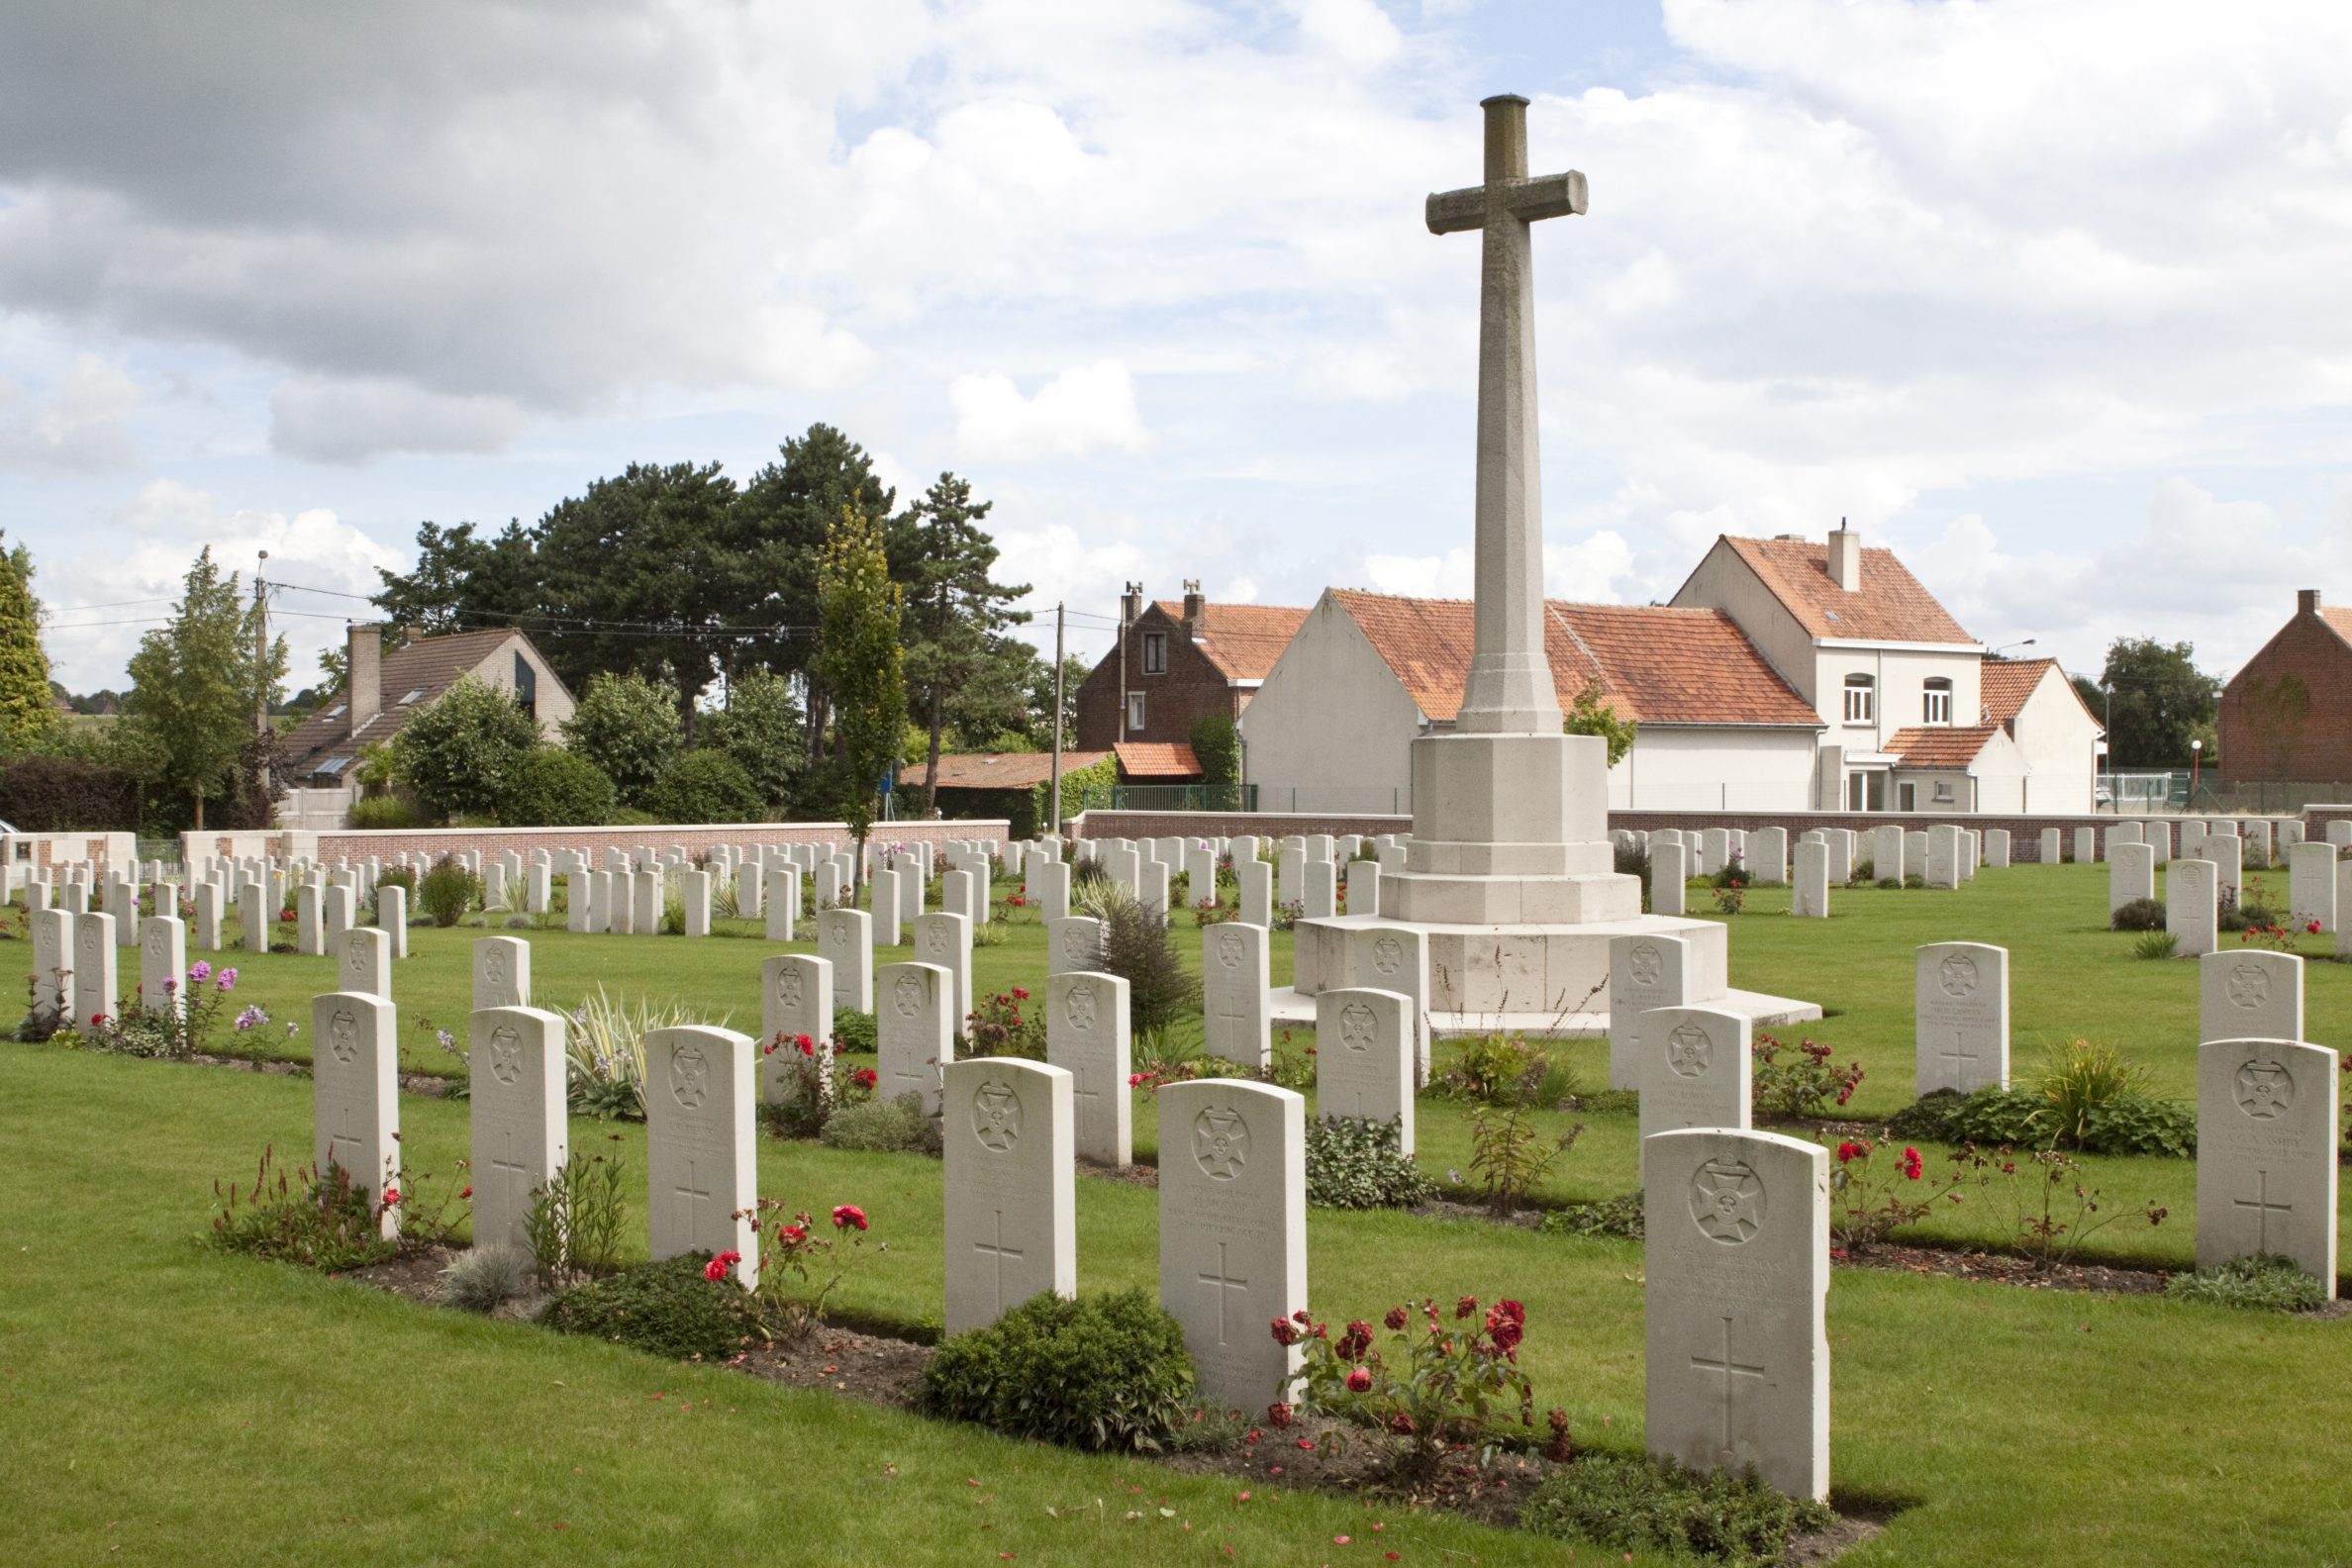 A graveyard in in Belgium.